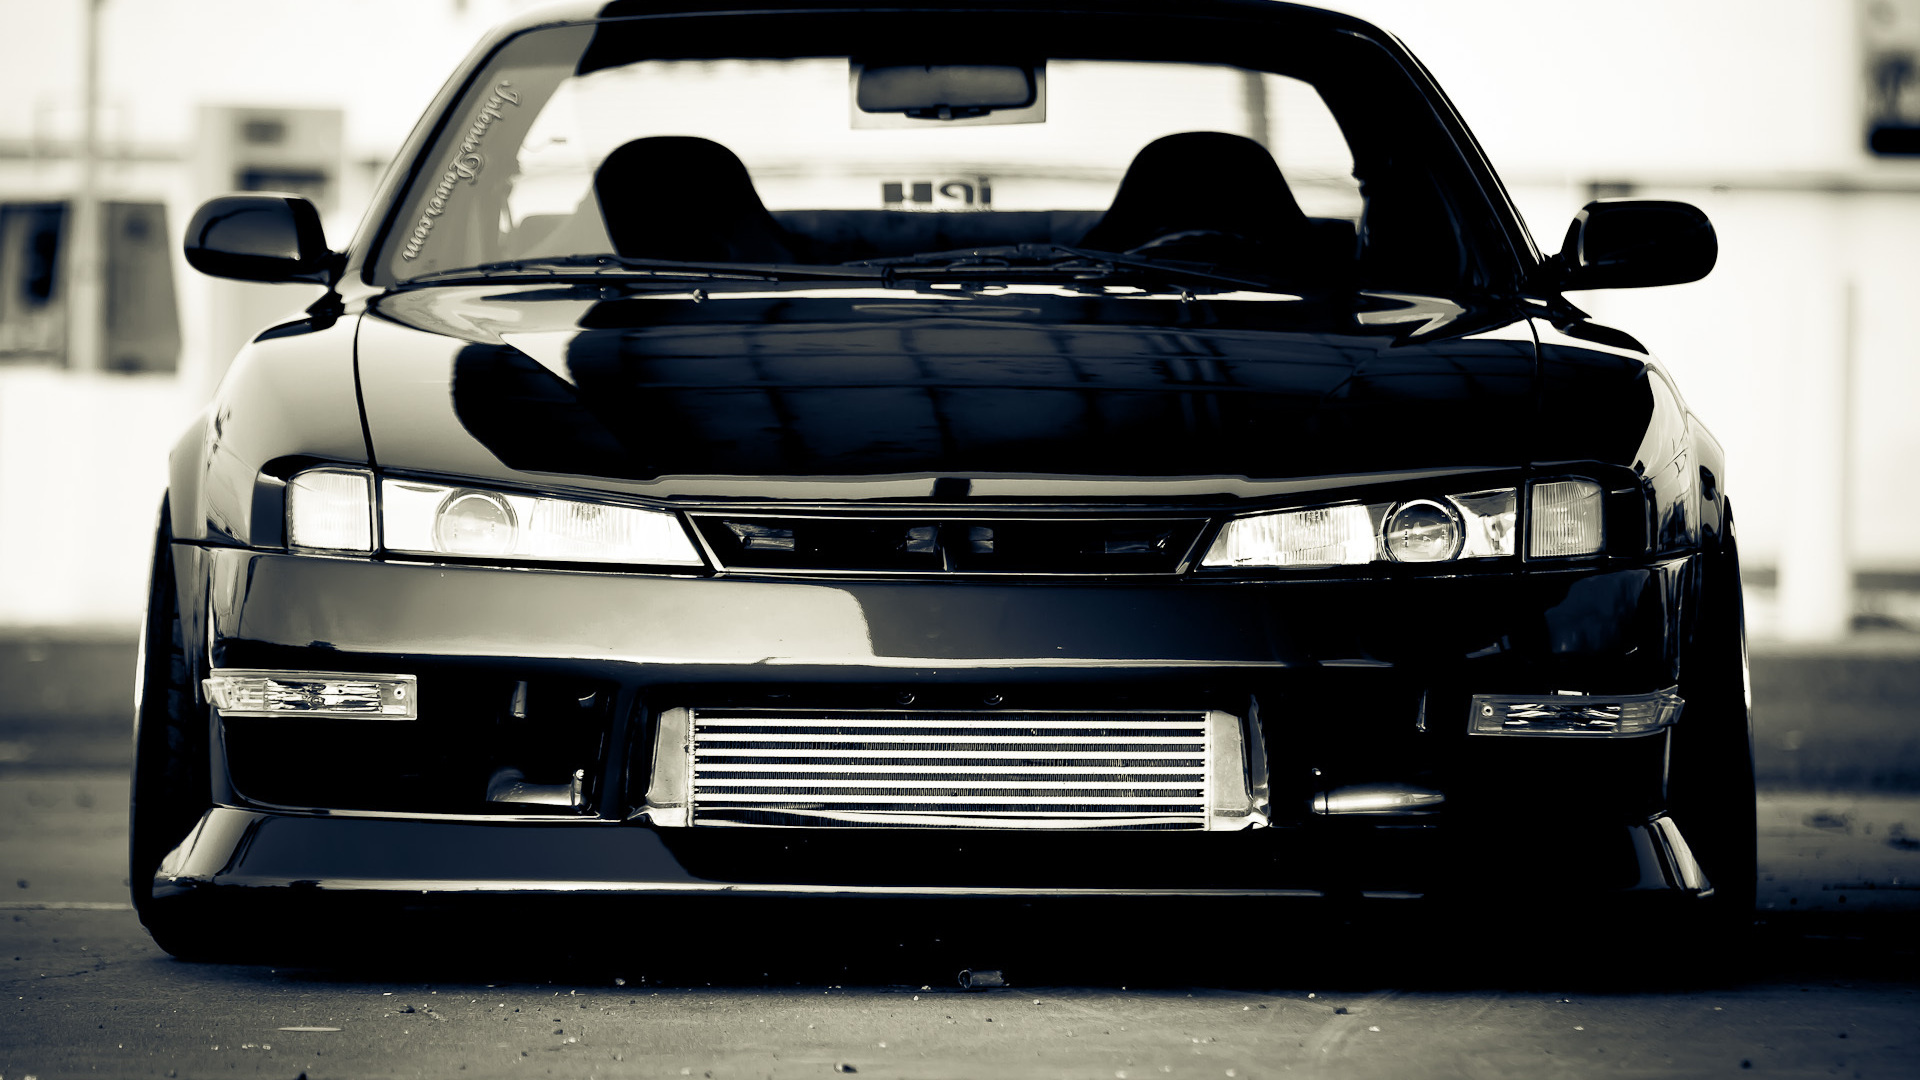 Vehicles - Drift - Bw - Nissan - Silvia Wallpaper - , HD Wallpaper & Backgrounds